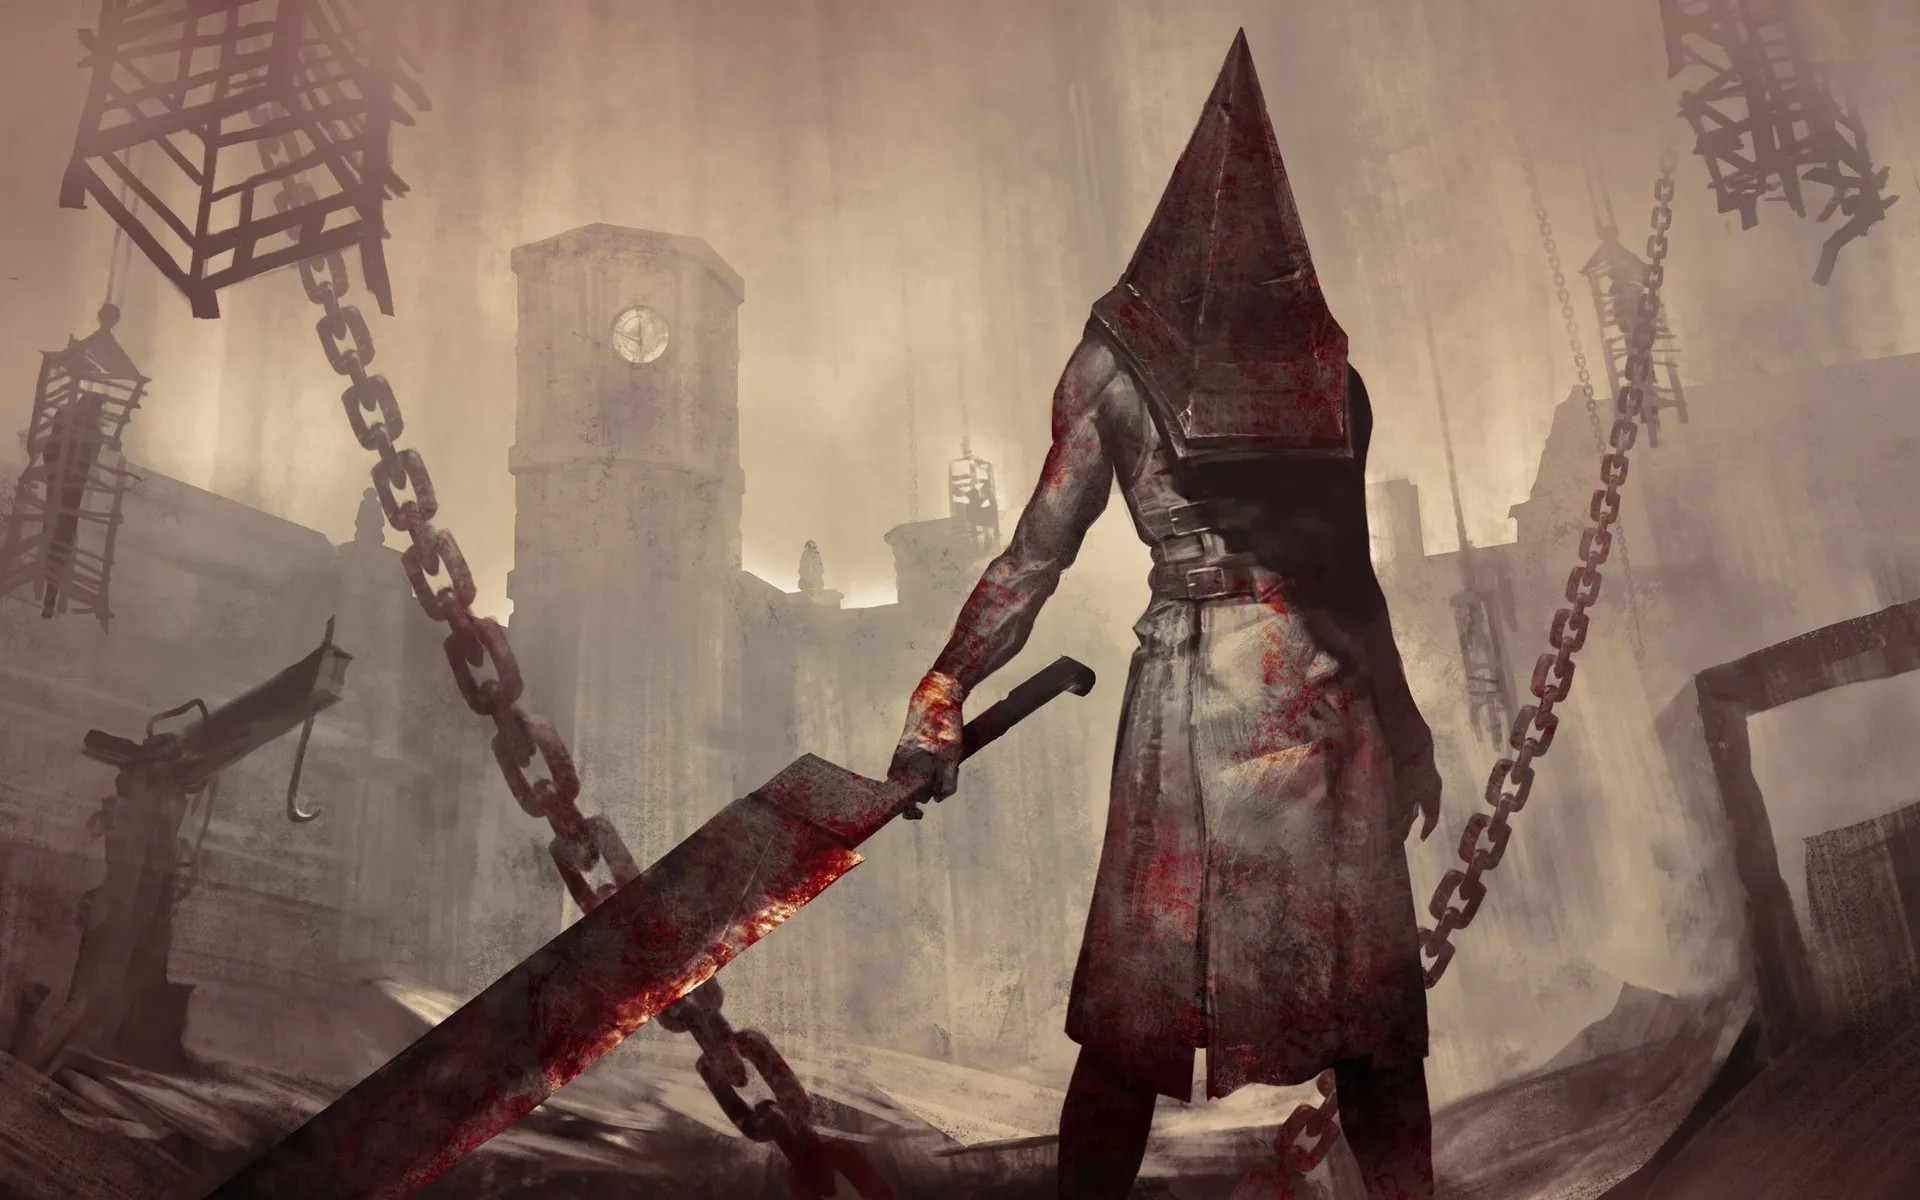 ผู้กำกับฝ่ายศิลป์เฉลยที่มาของ Pyramid Head ไอคอนวายร้ายจาก Silent Hill